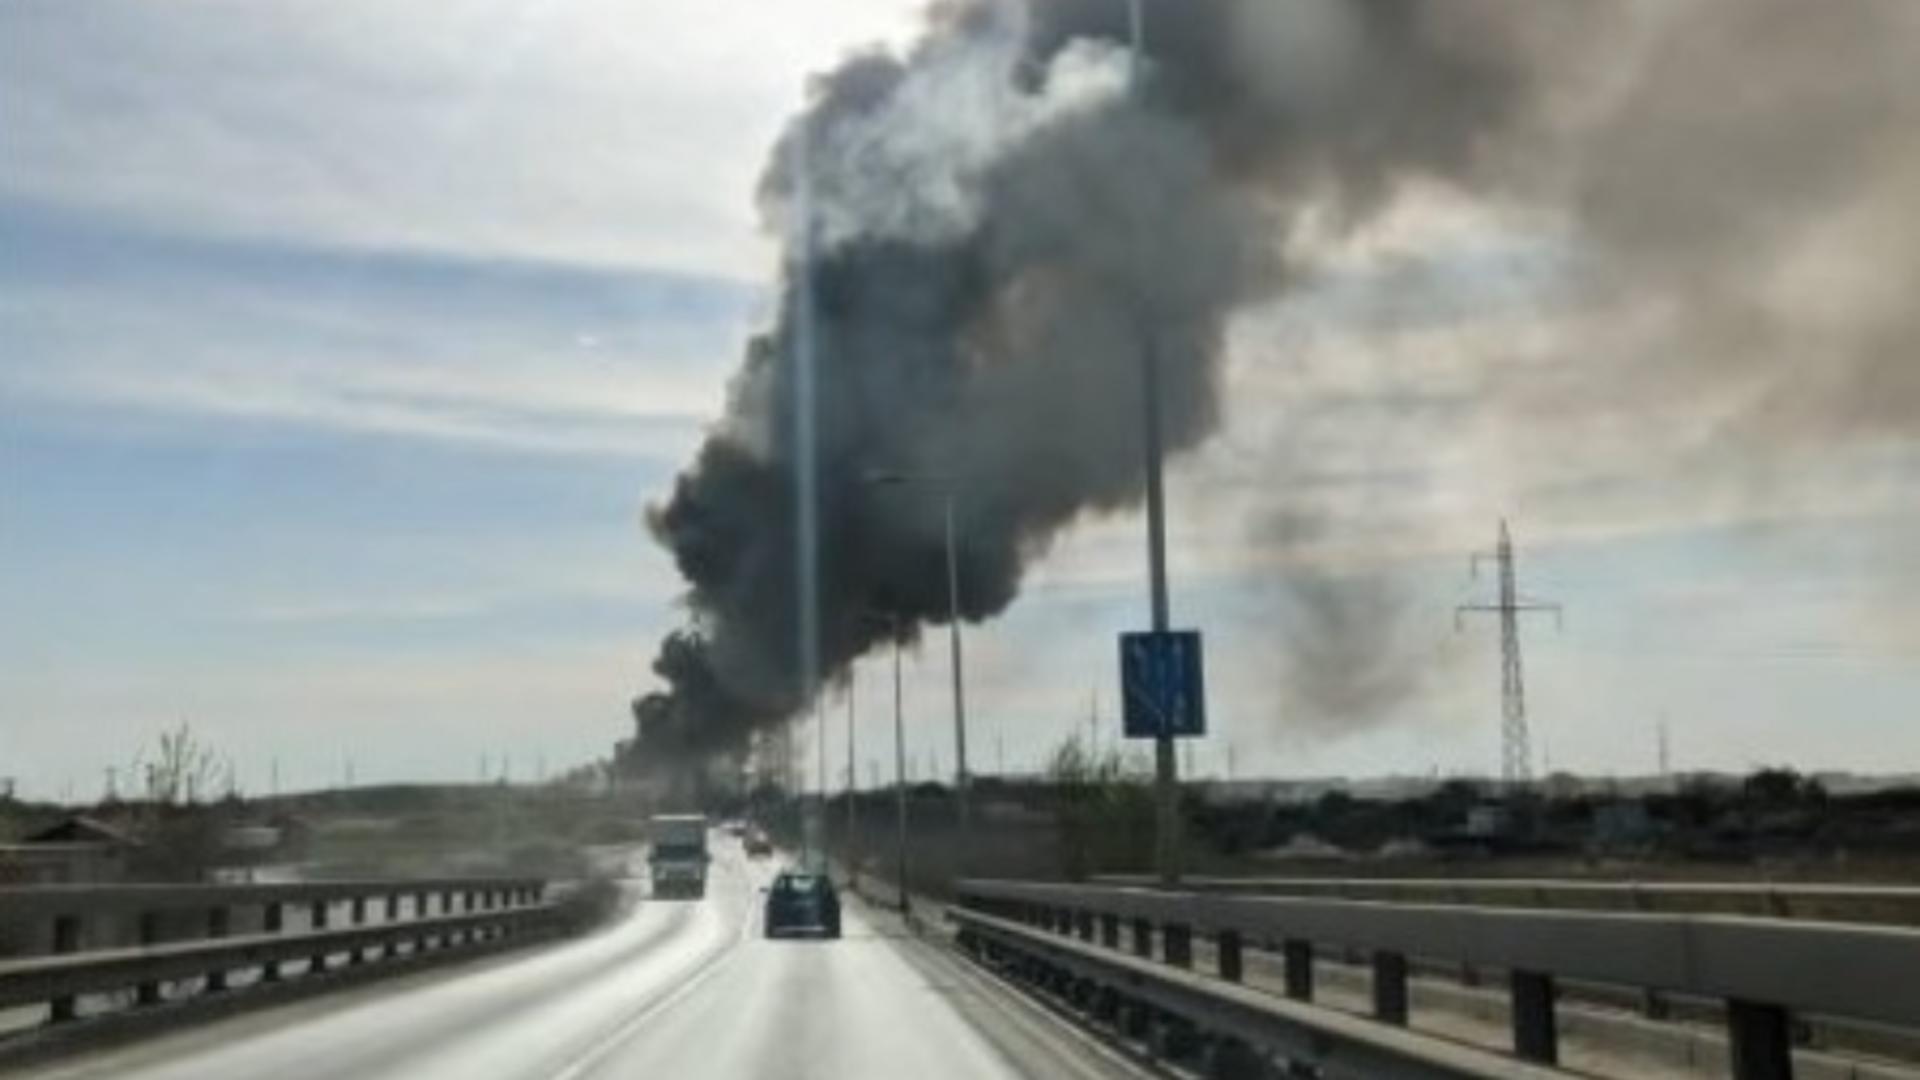 INCENDIU de proporții în Timișoara! O fostă fabrică de țigări a luat foc, degajări mari de FUM